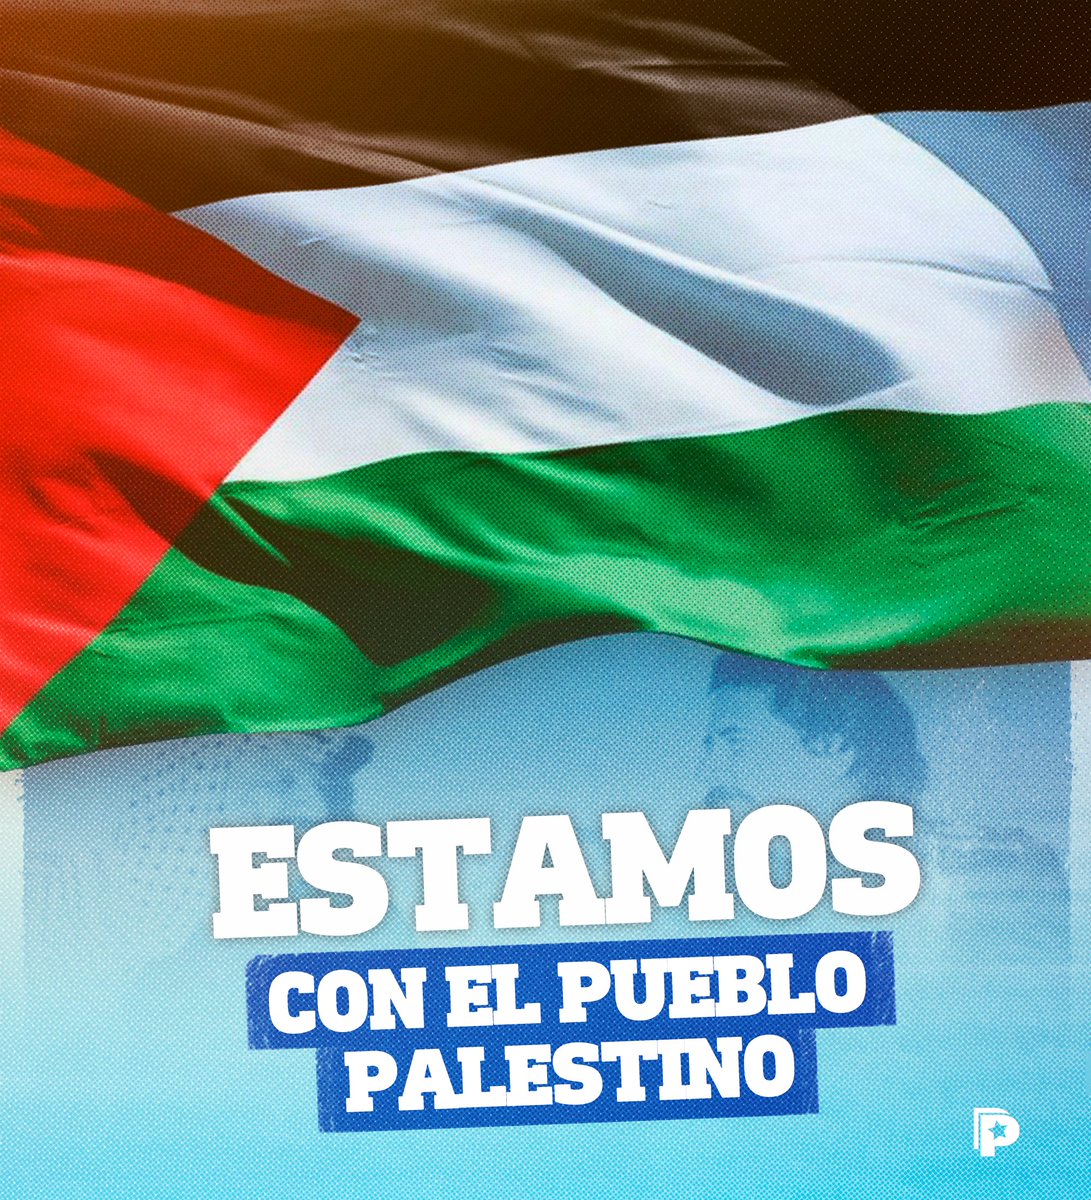 Hoy, #29Noviembre, se conmemora el Día Internacional de la Solidaridad con el Pueblo Palestino. 🇵🇸 ✊🏻 

En este día, se hace un llamado a la comunidad internacional sobre la situación del pueblo palestino. Es una oportunidad para reflexionar sobre la necesidad de buscar una